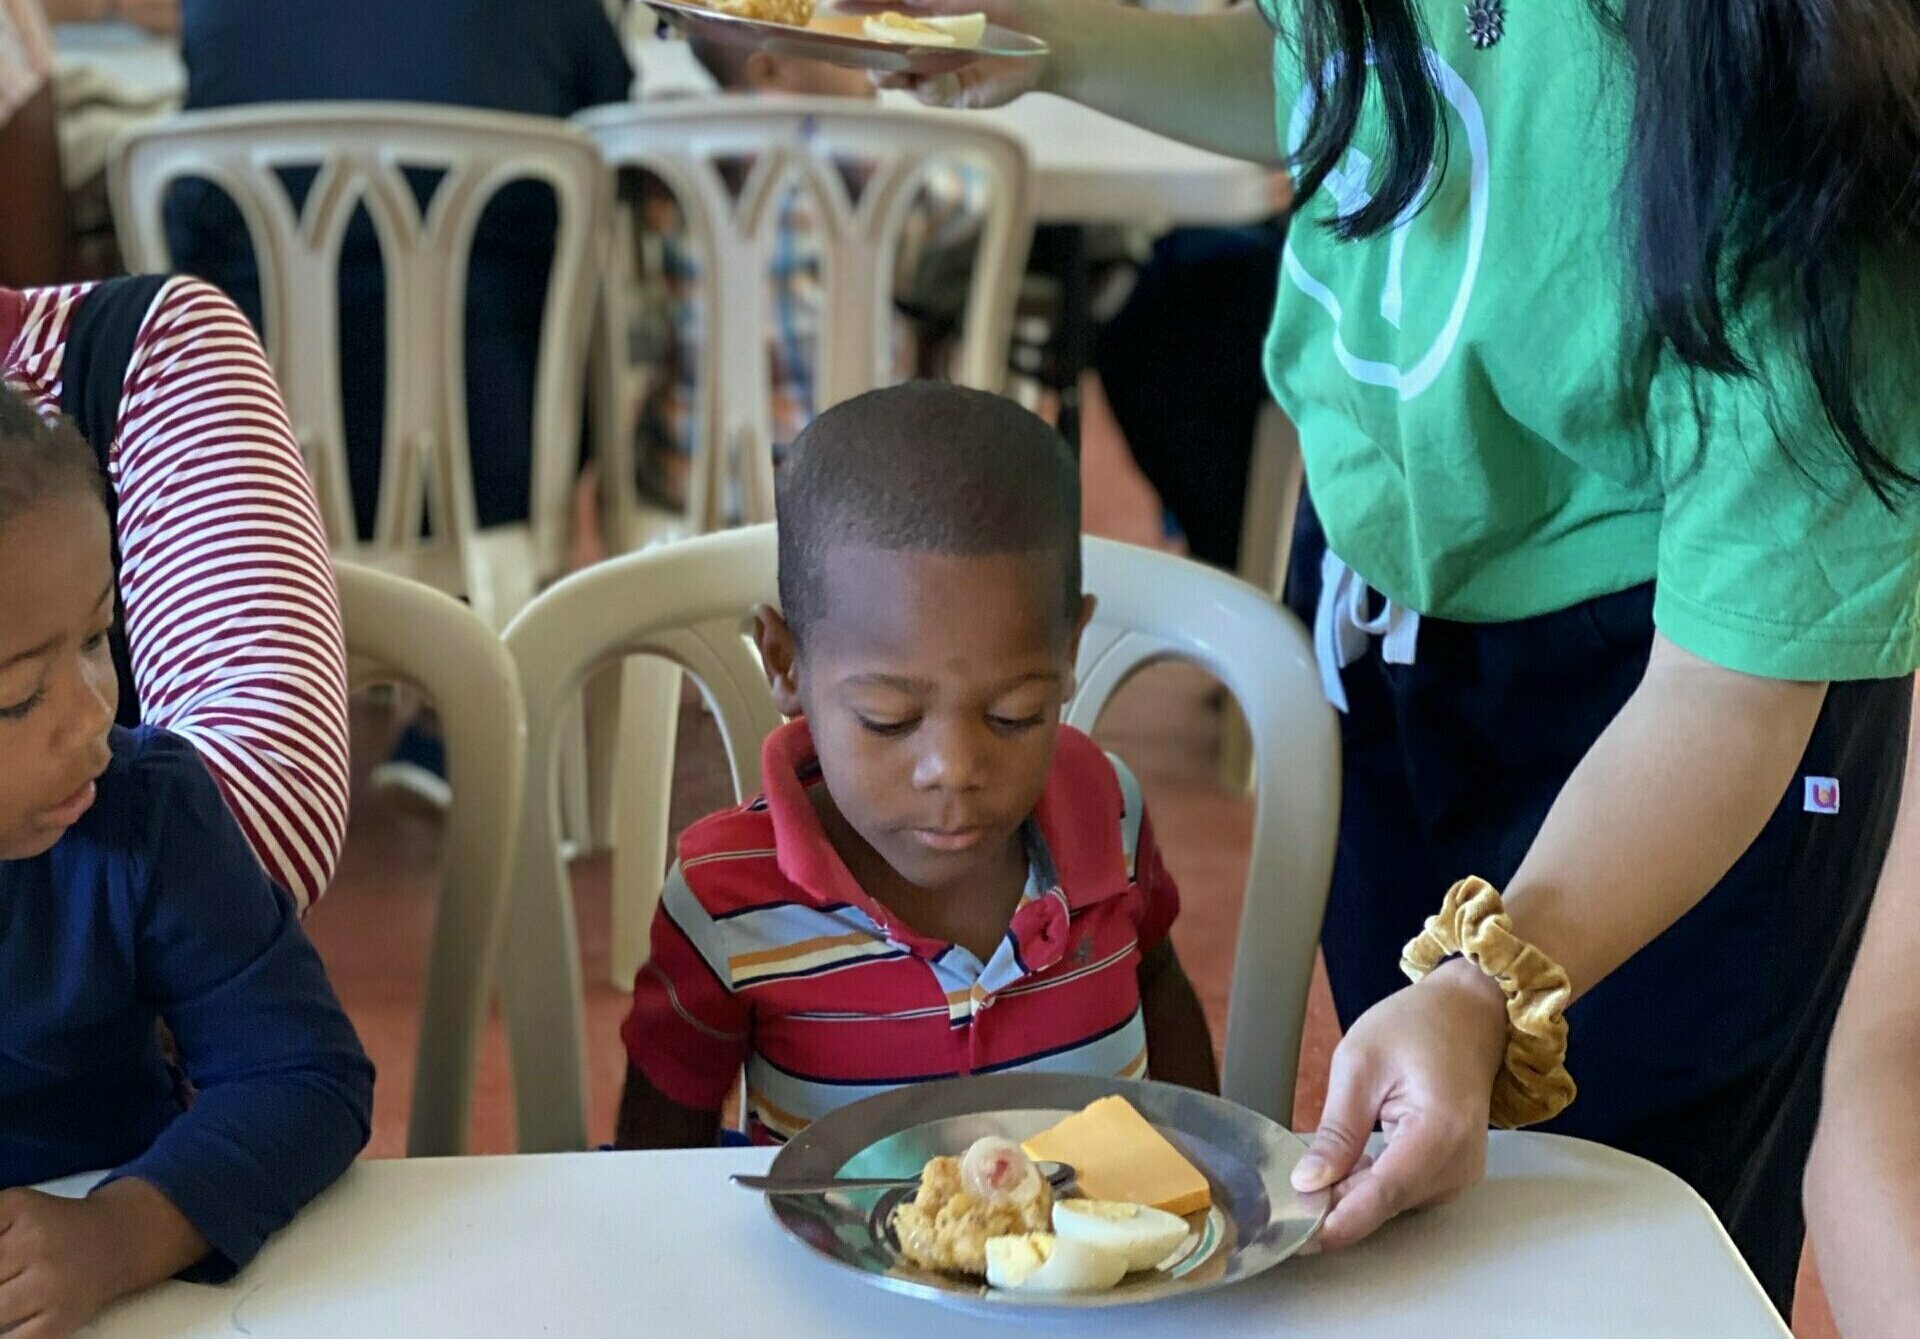 mission trip participants serving a vulnerable child food